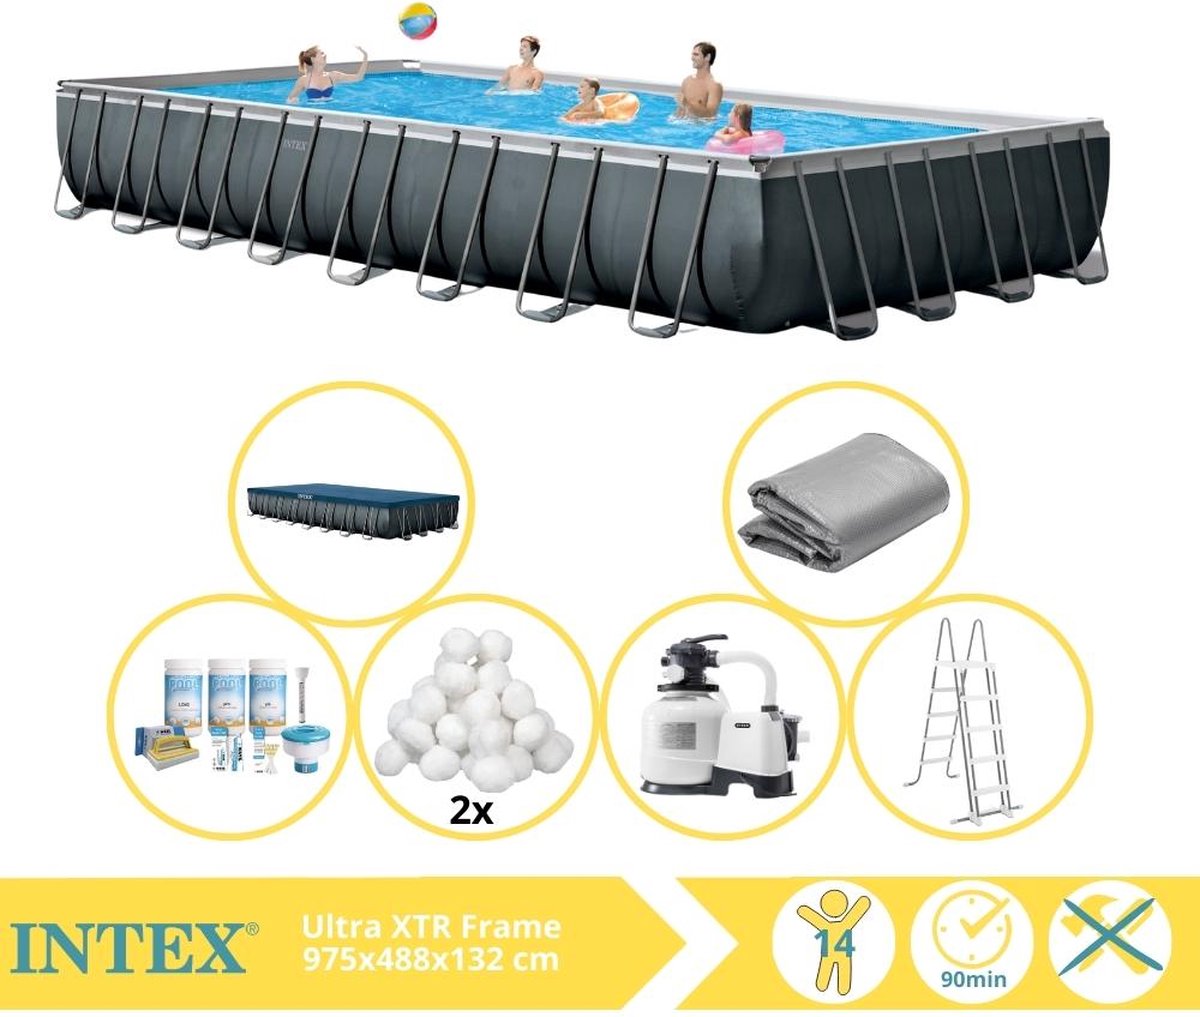 Intex Ultra XTR Frame Zwembad - Opzetzwembad - 975x488x132 cm - Inclusief Onderhoudspakket en Filterbollen